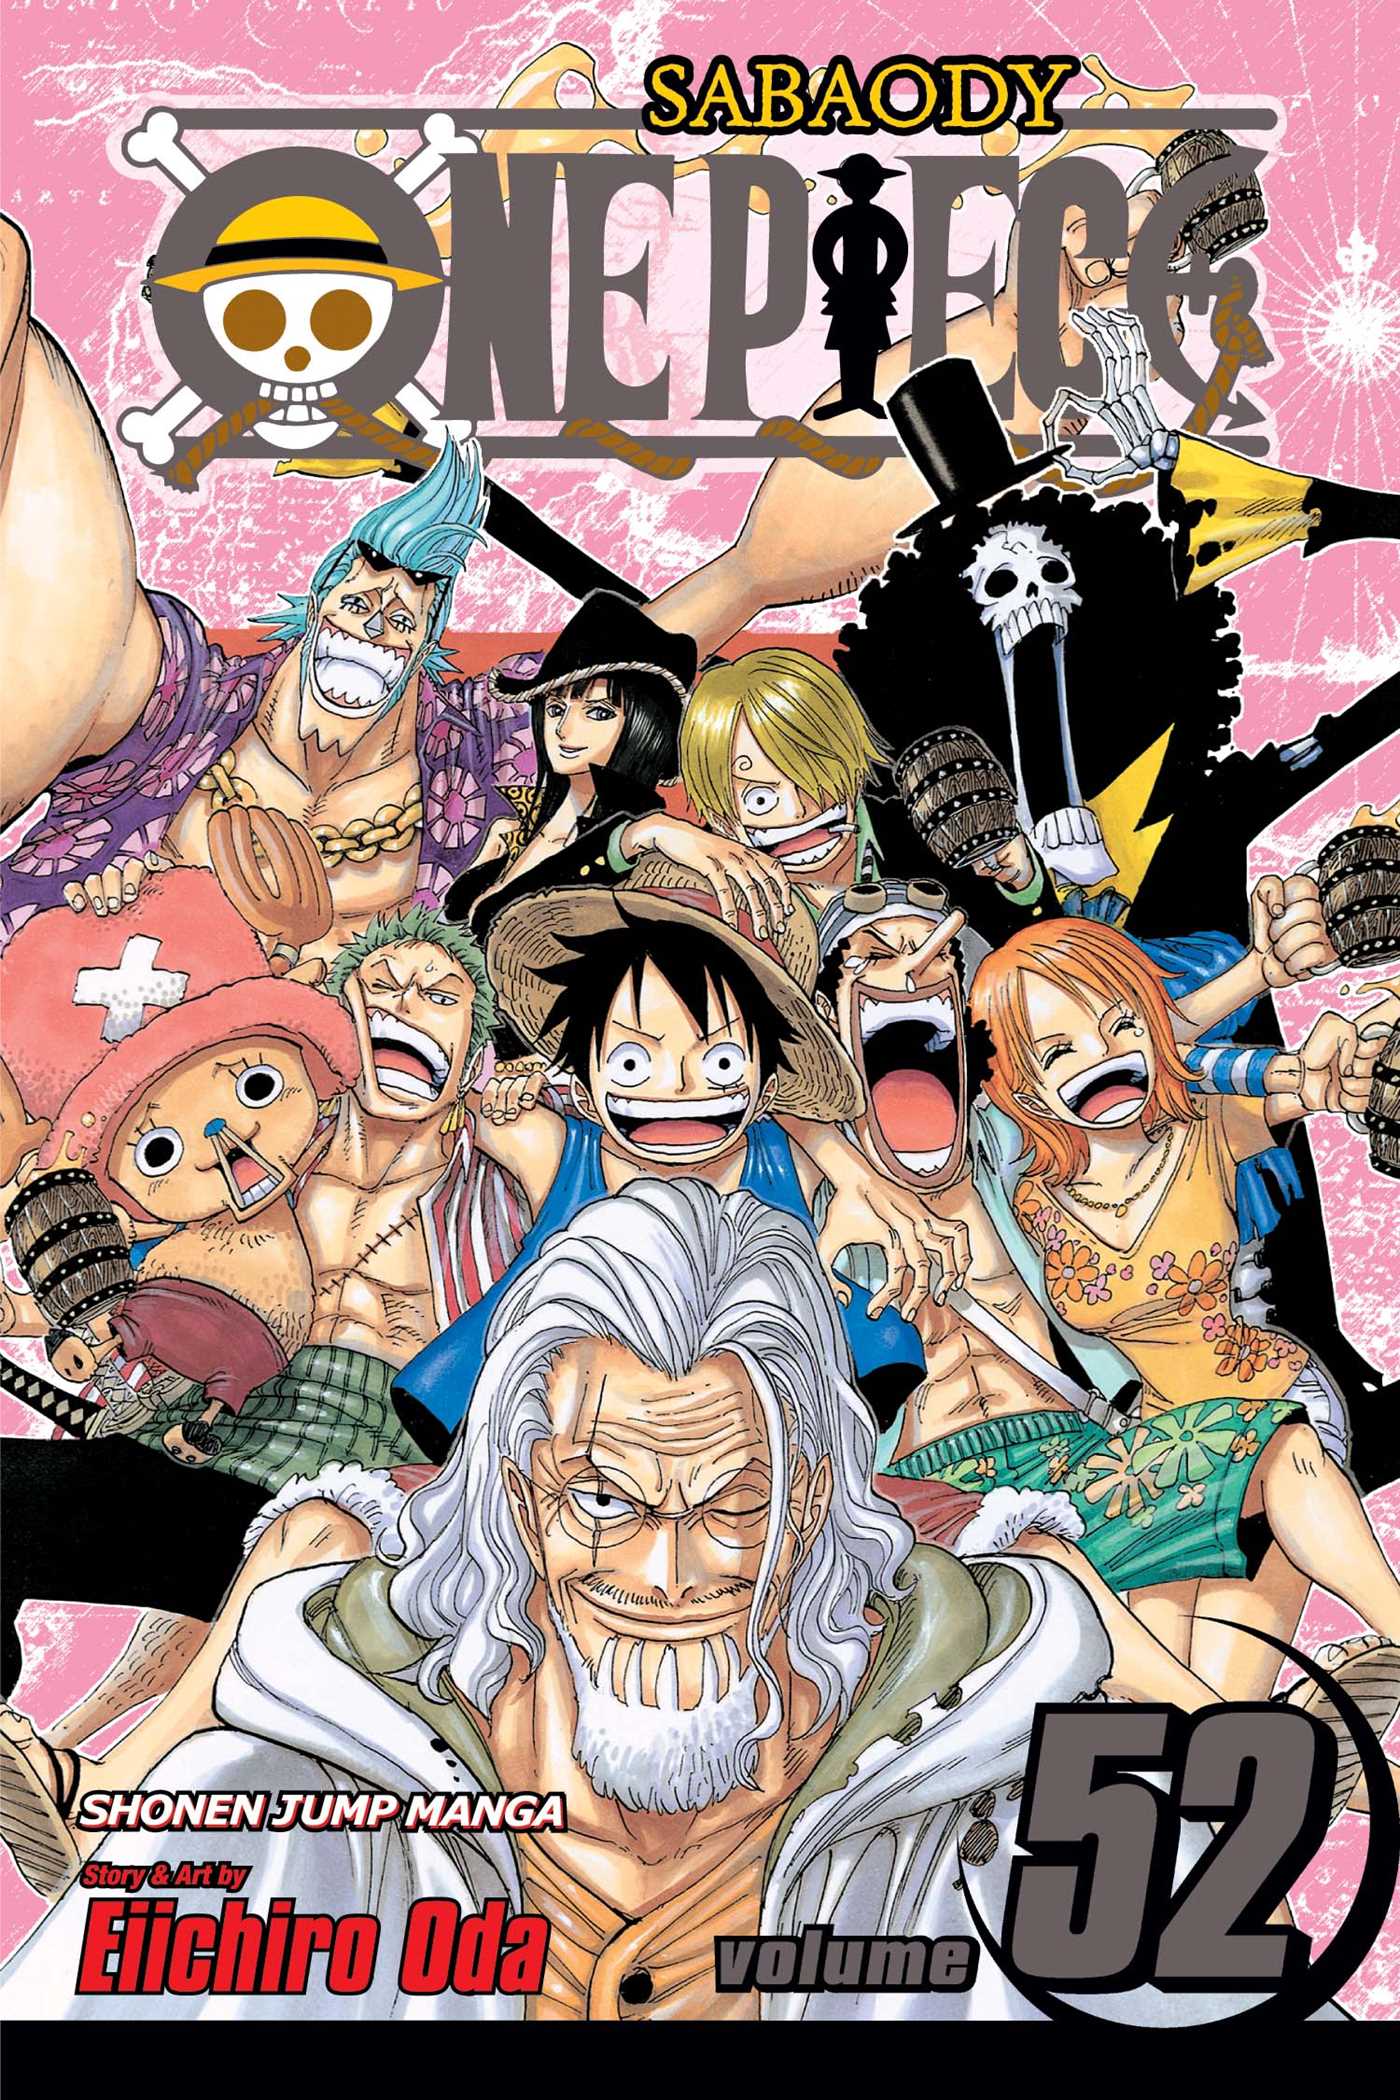 Eiichiro Oda - One Piece